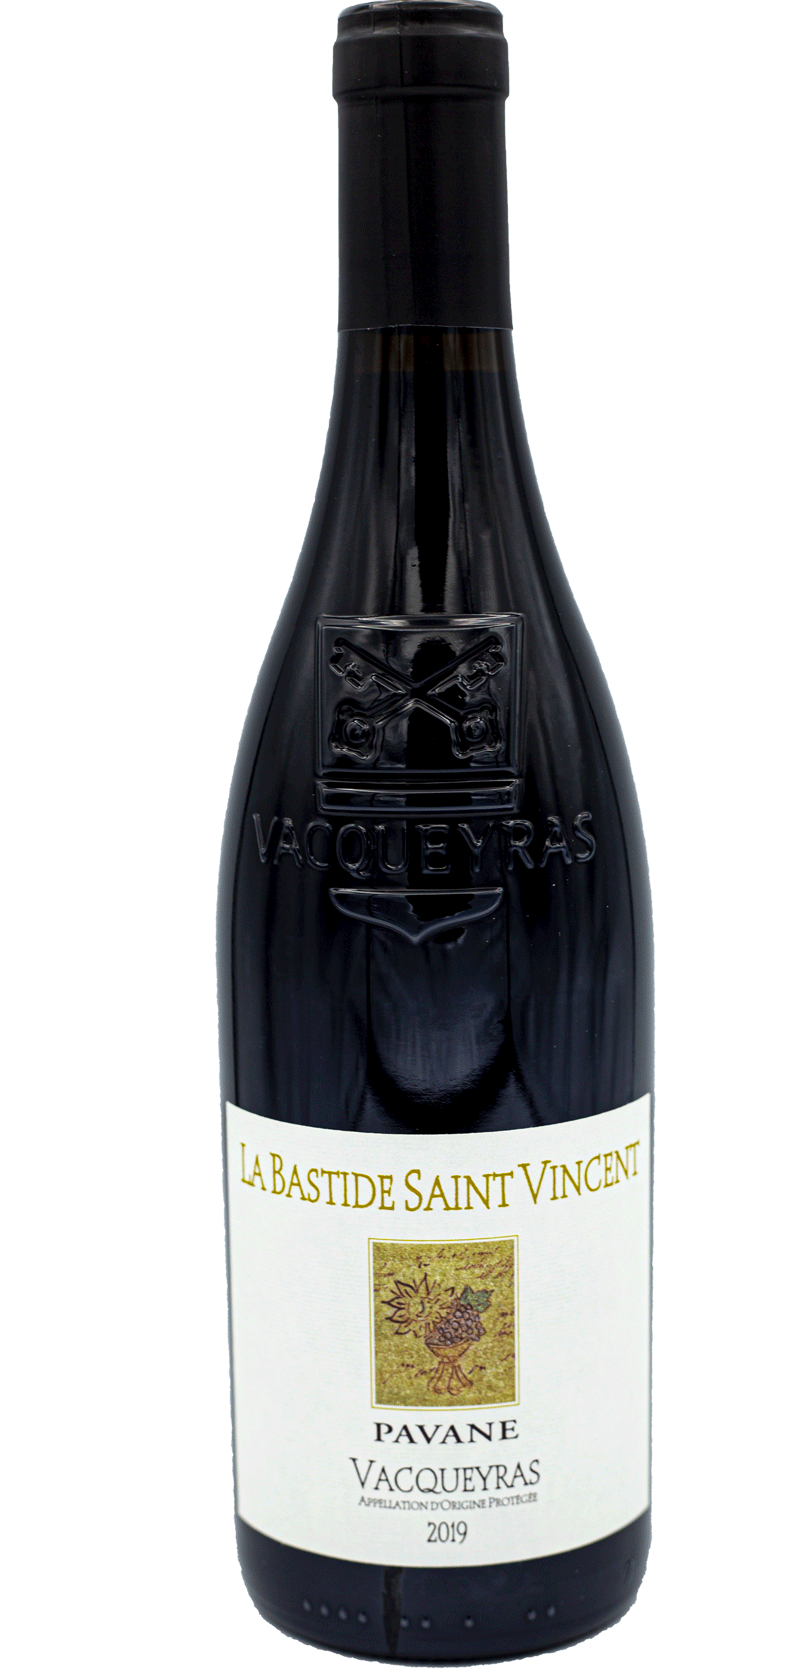 La Bastide Saint-Vincent Vacqueyras Pavane 2019 - Vin Rouge